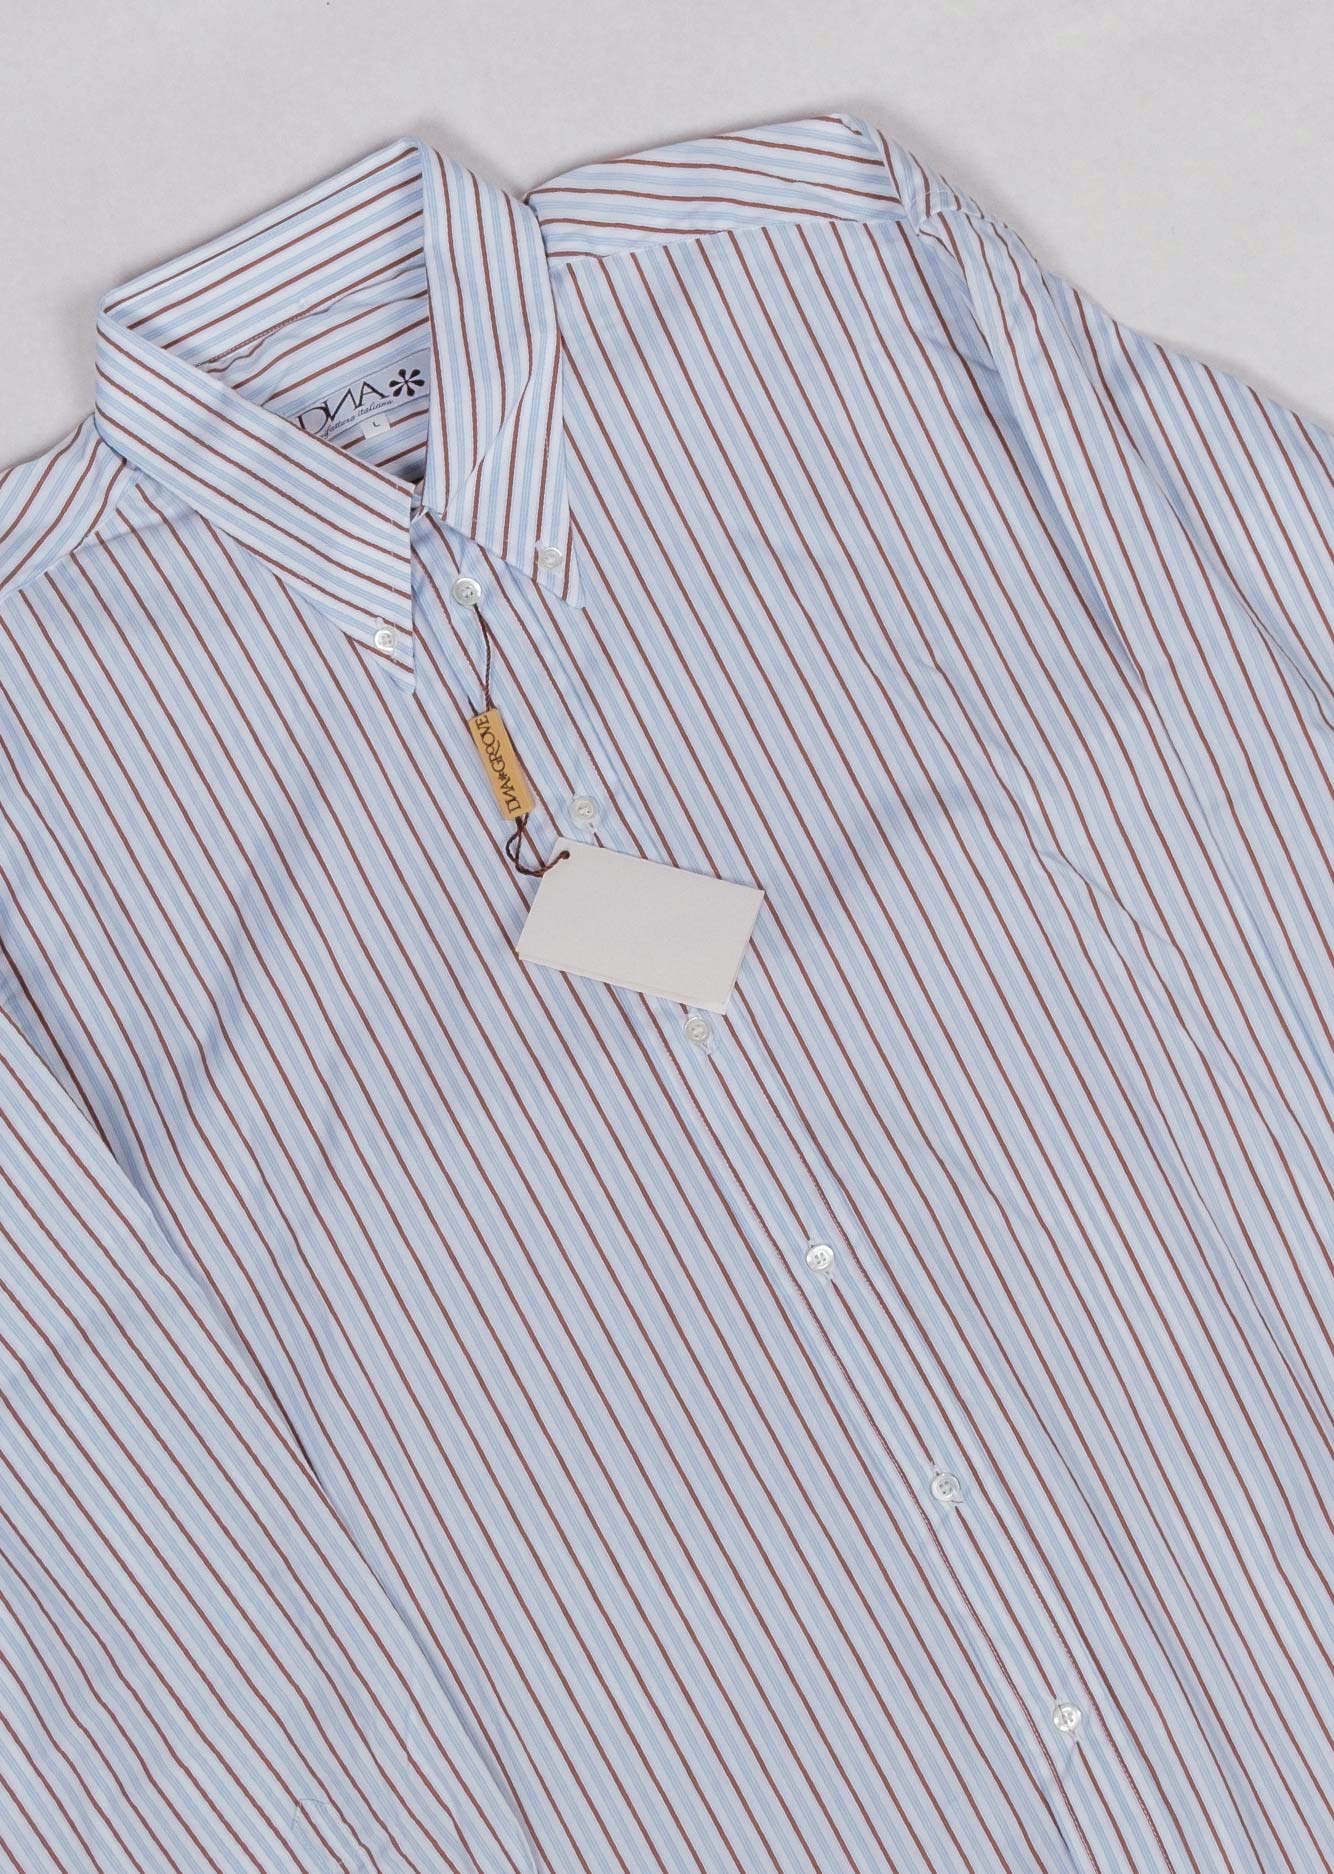 Vintage 1960s-70's Paul of California Black White Gray Striped Short Sleeve Disco Knit Shirt Men’s Large Button Detail at Waist Kleding Herenkleding Overhemden & T-shirts Oxfords & Buttondowns 